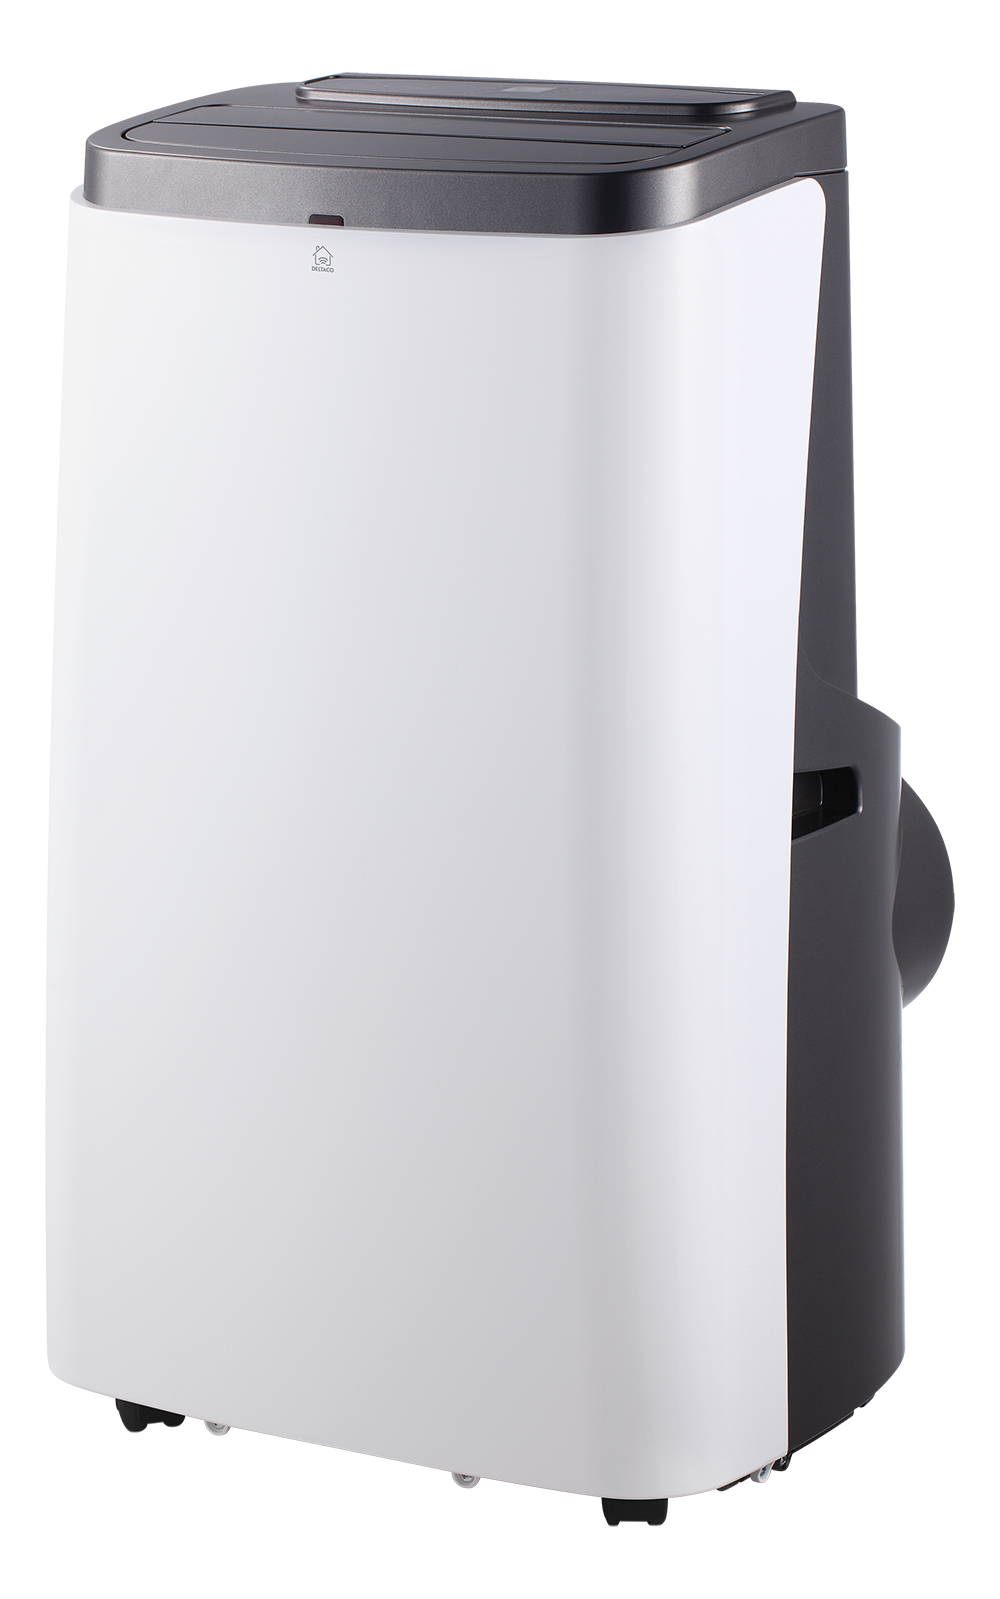 DELTACO SMART HOME Smart AC, охлаждение / обогрев, R290 Белый и черный